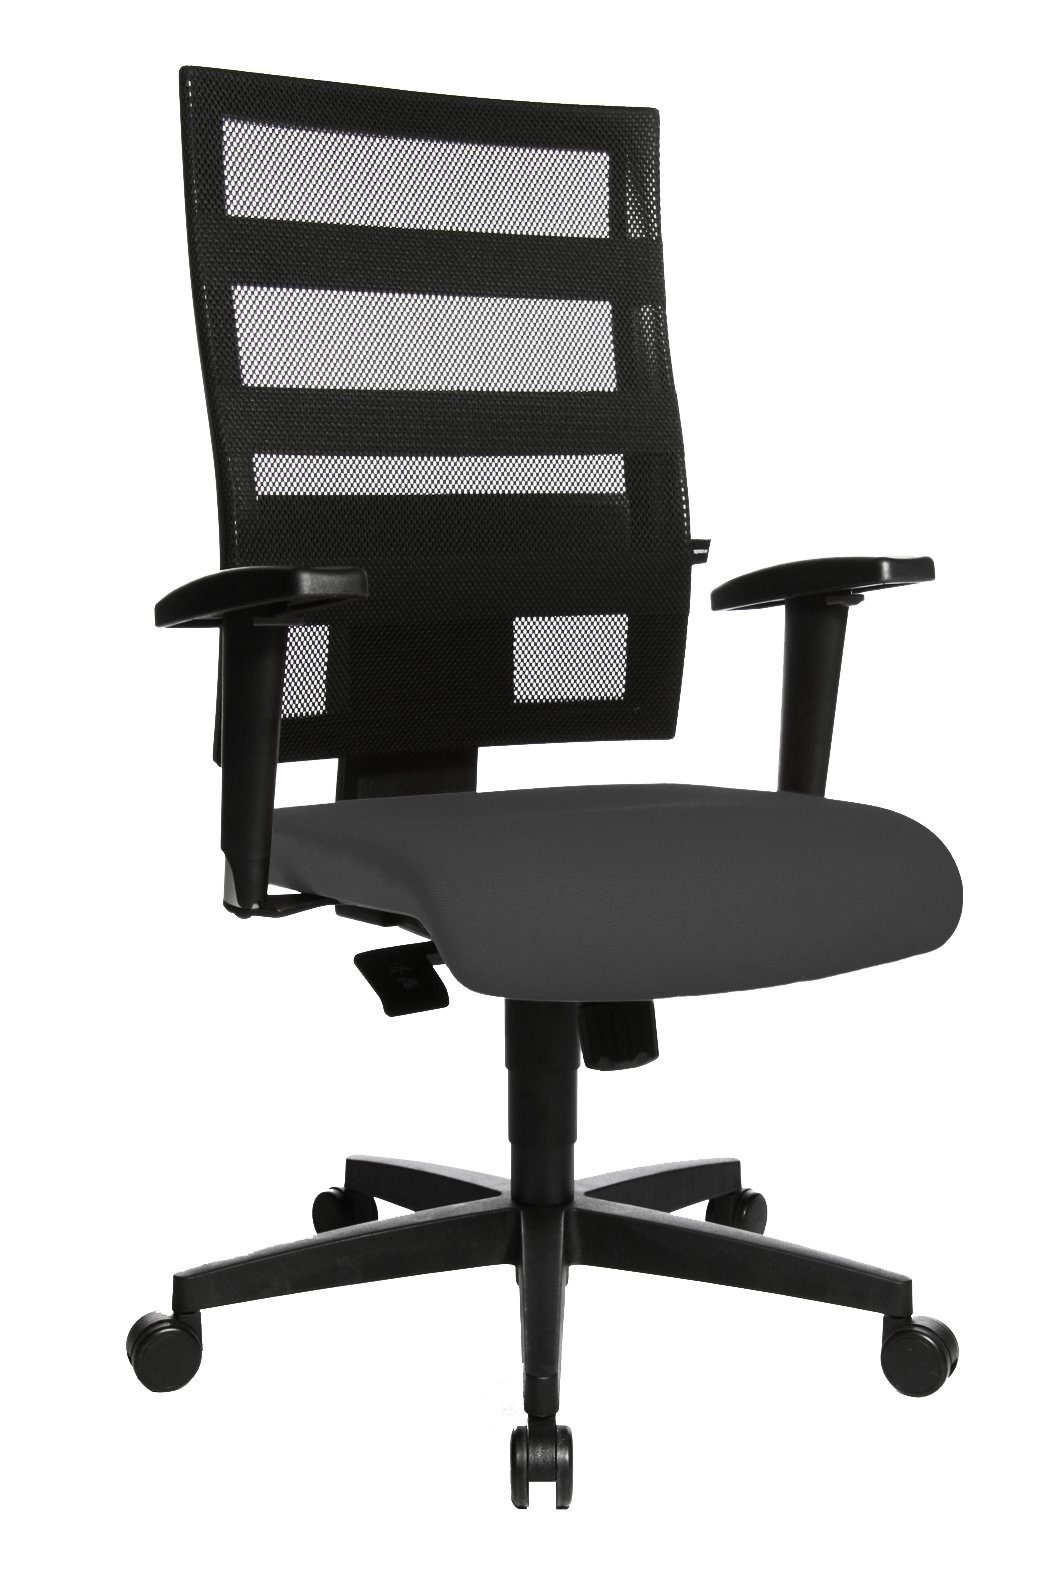 Steelboxx Drehstuhl Bürodrehstuhl mit Armlehnen, Netzrücken, Kunststofffußkreuz, GS zertif (1), Höhenverstellbar, extra komfortable, rundum gepolsterte Rückenlehne grau